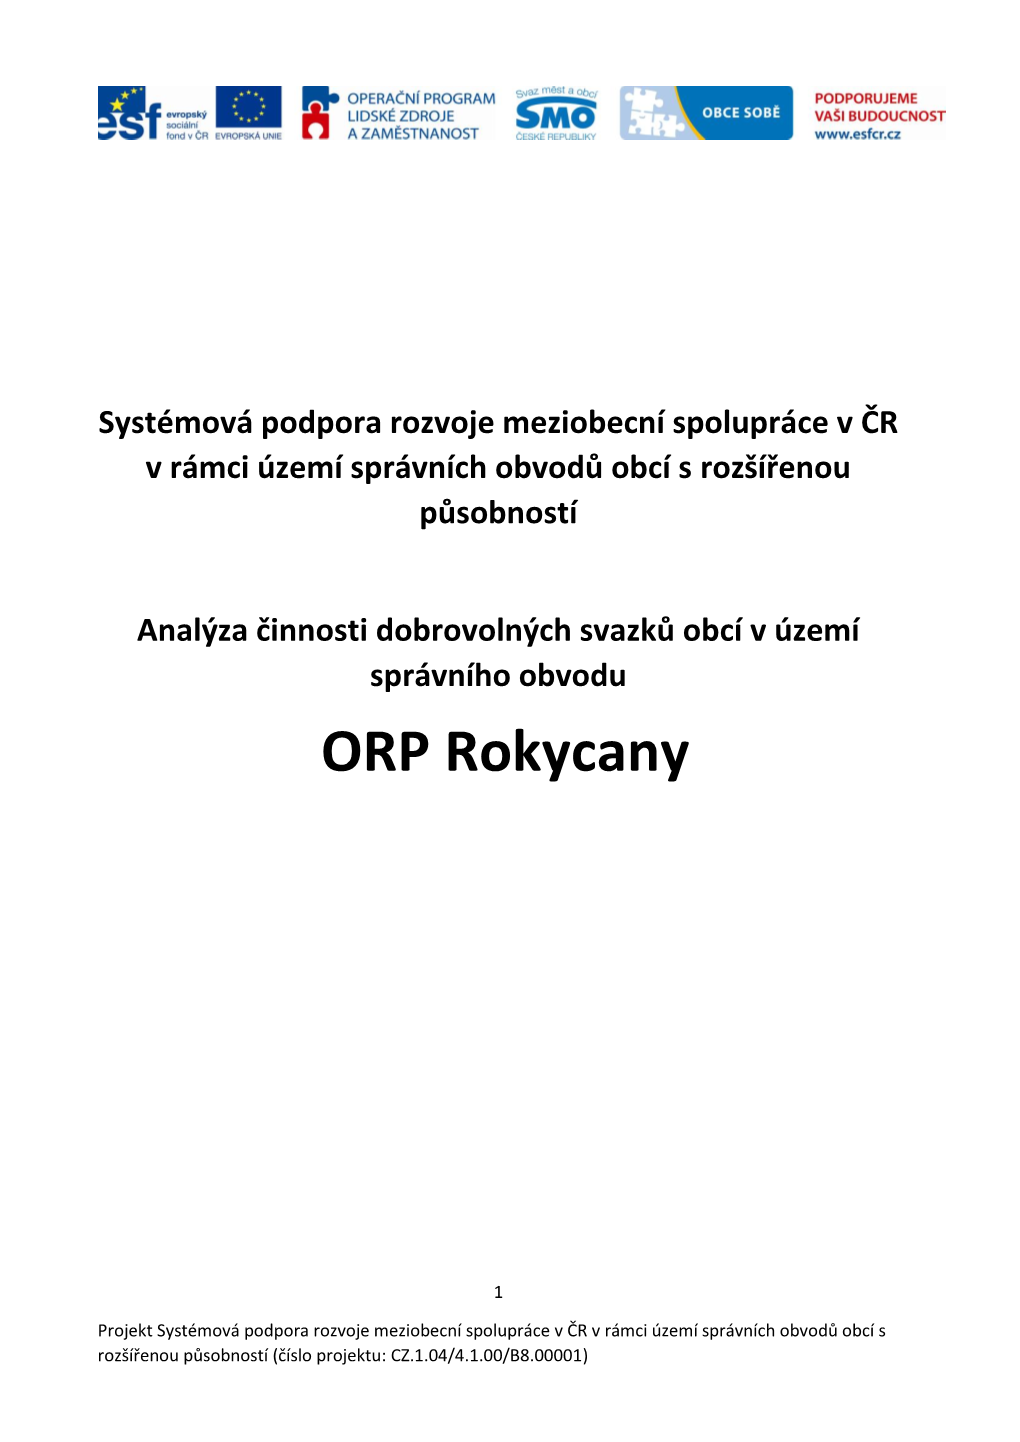 ORP Rokycany